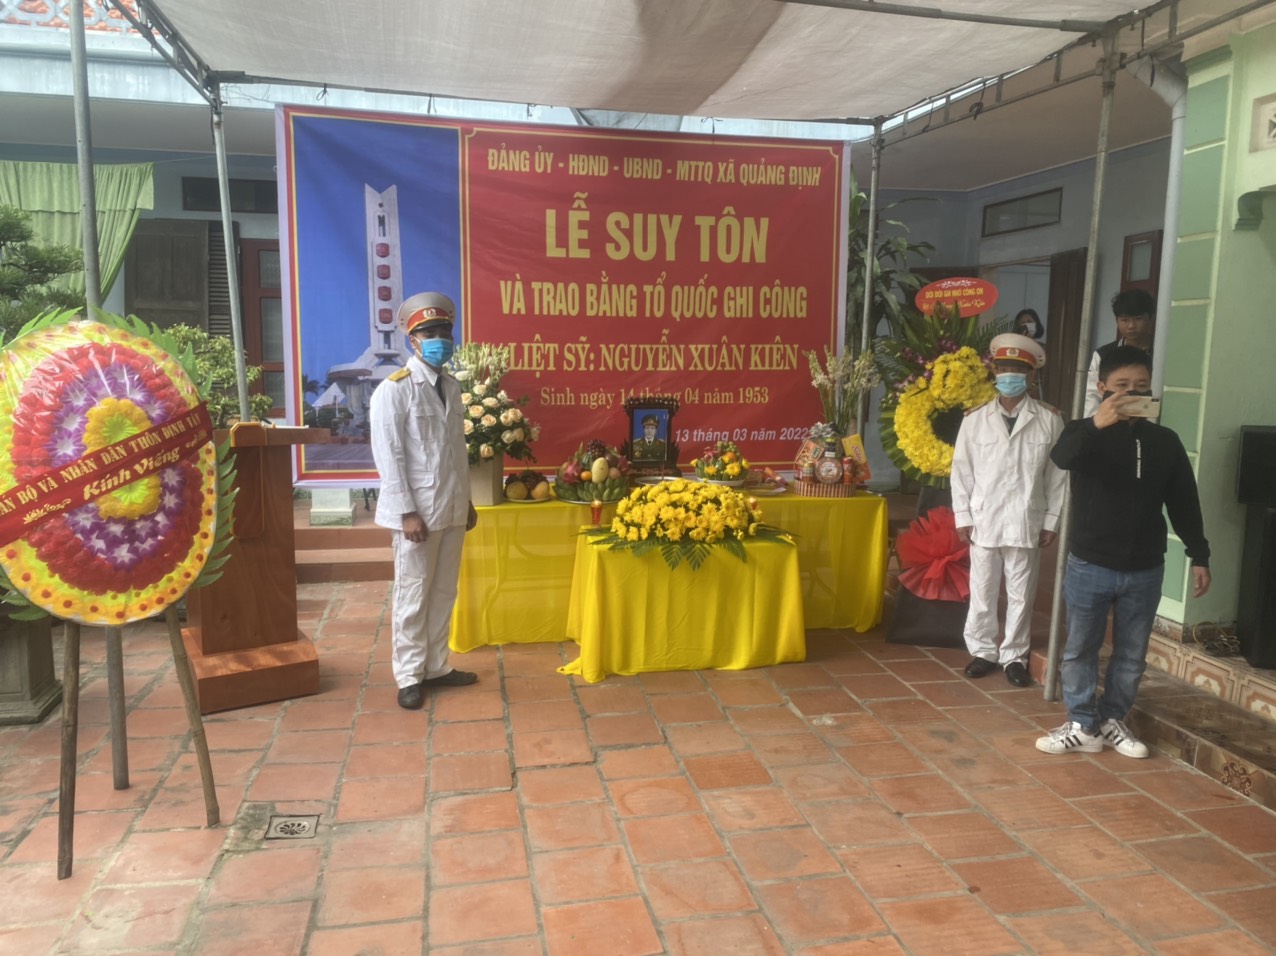 Lễ suy tôn cho Liệt sỹ Nguyễn Xuân Kiên